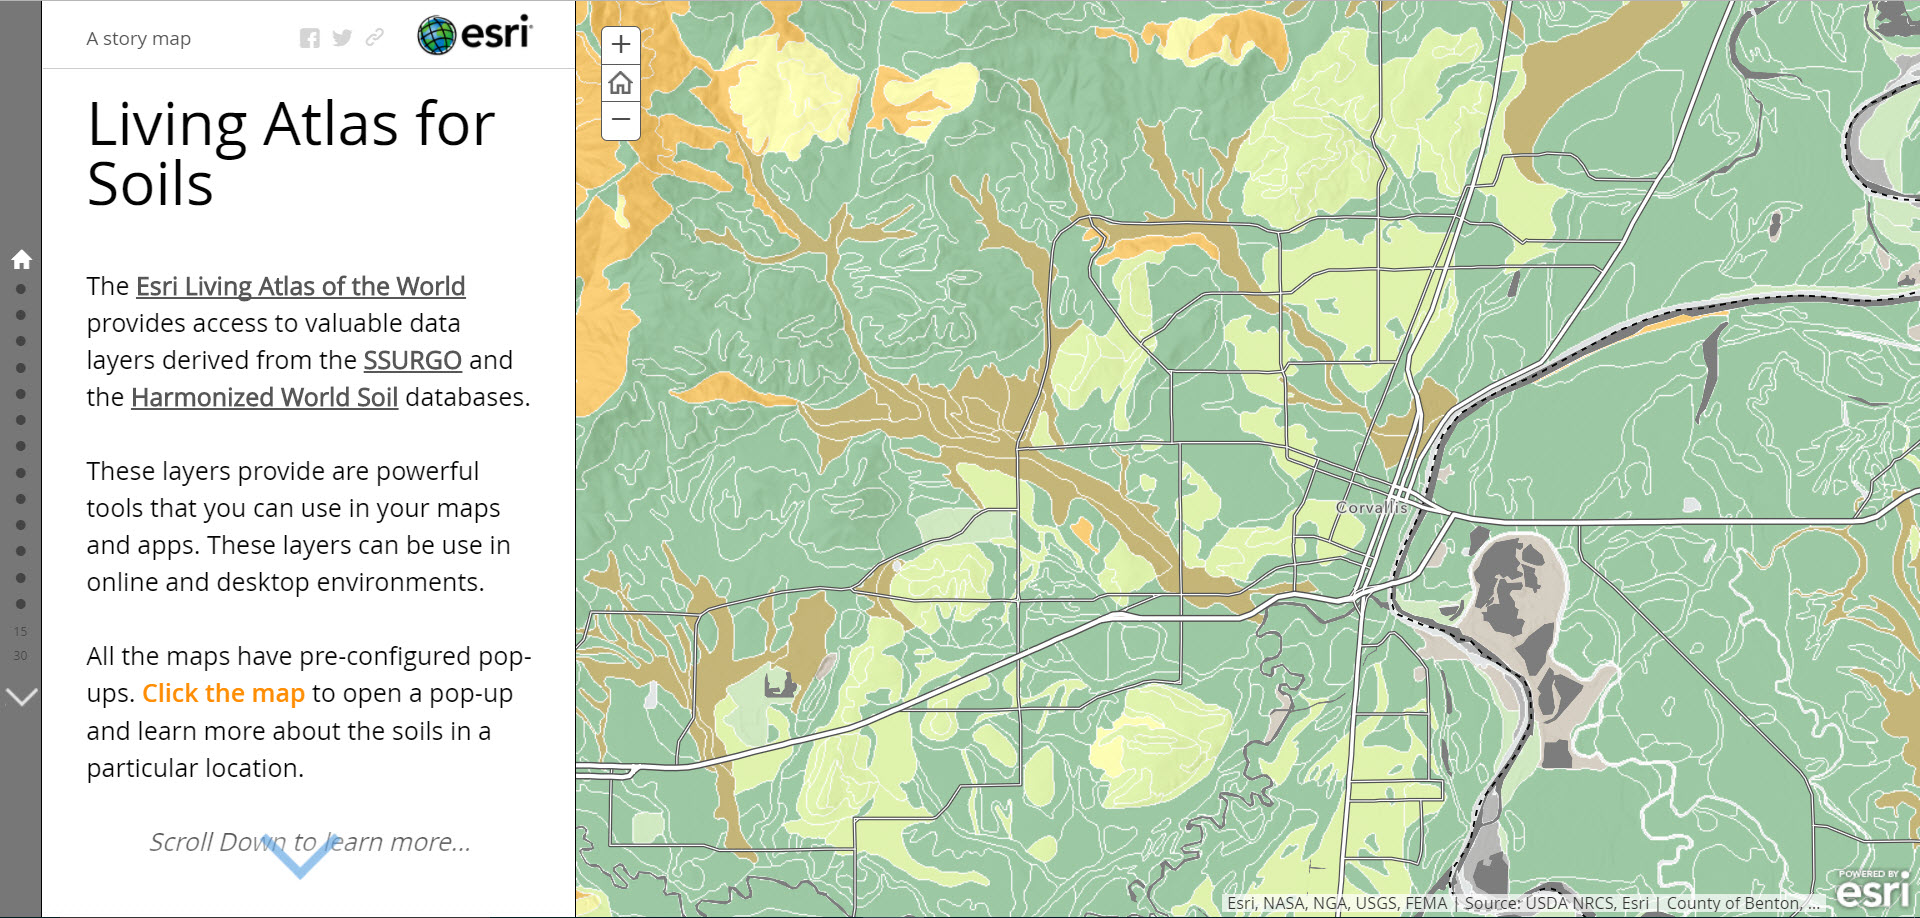 Living Atlas for Soils Story Map